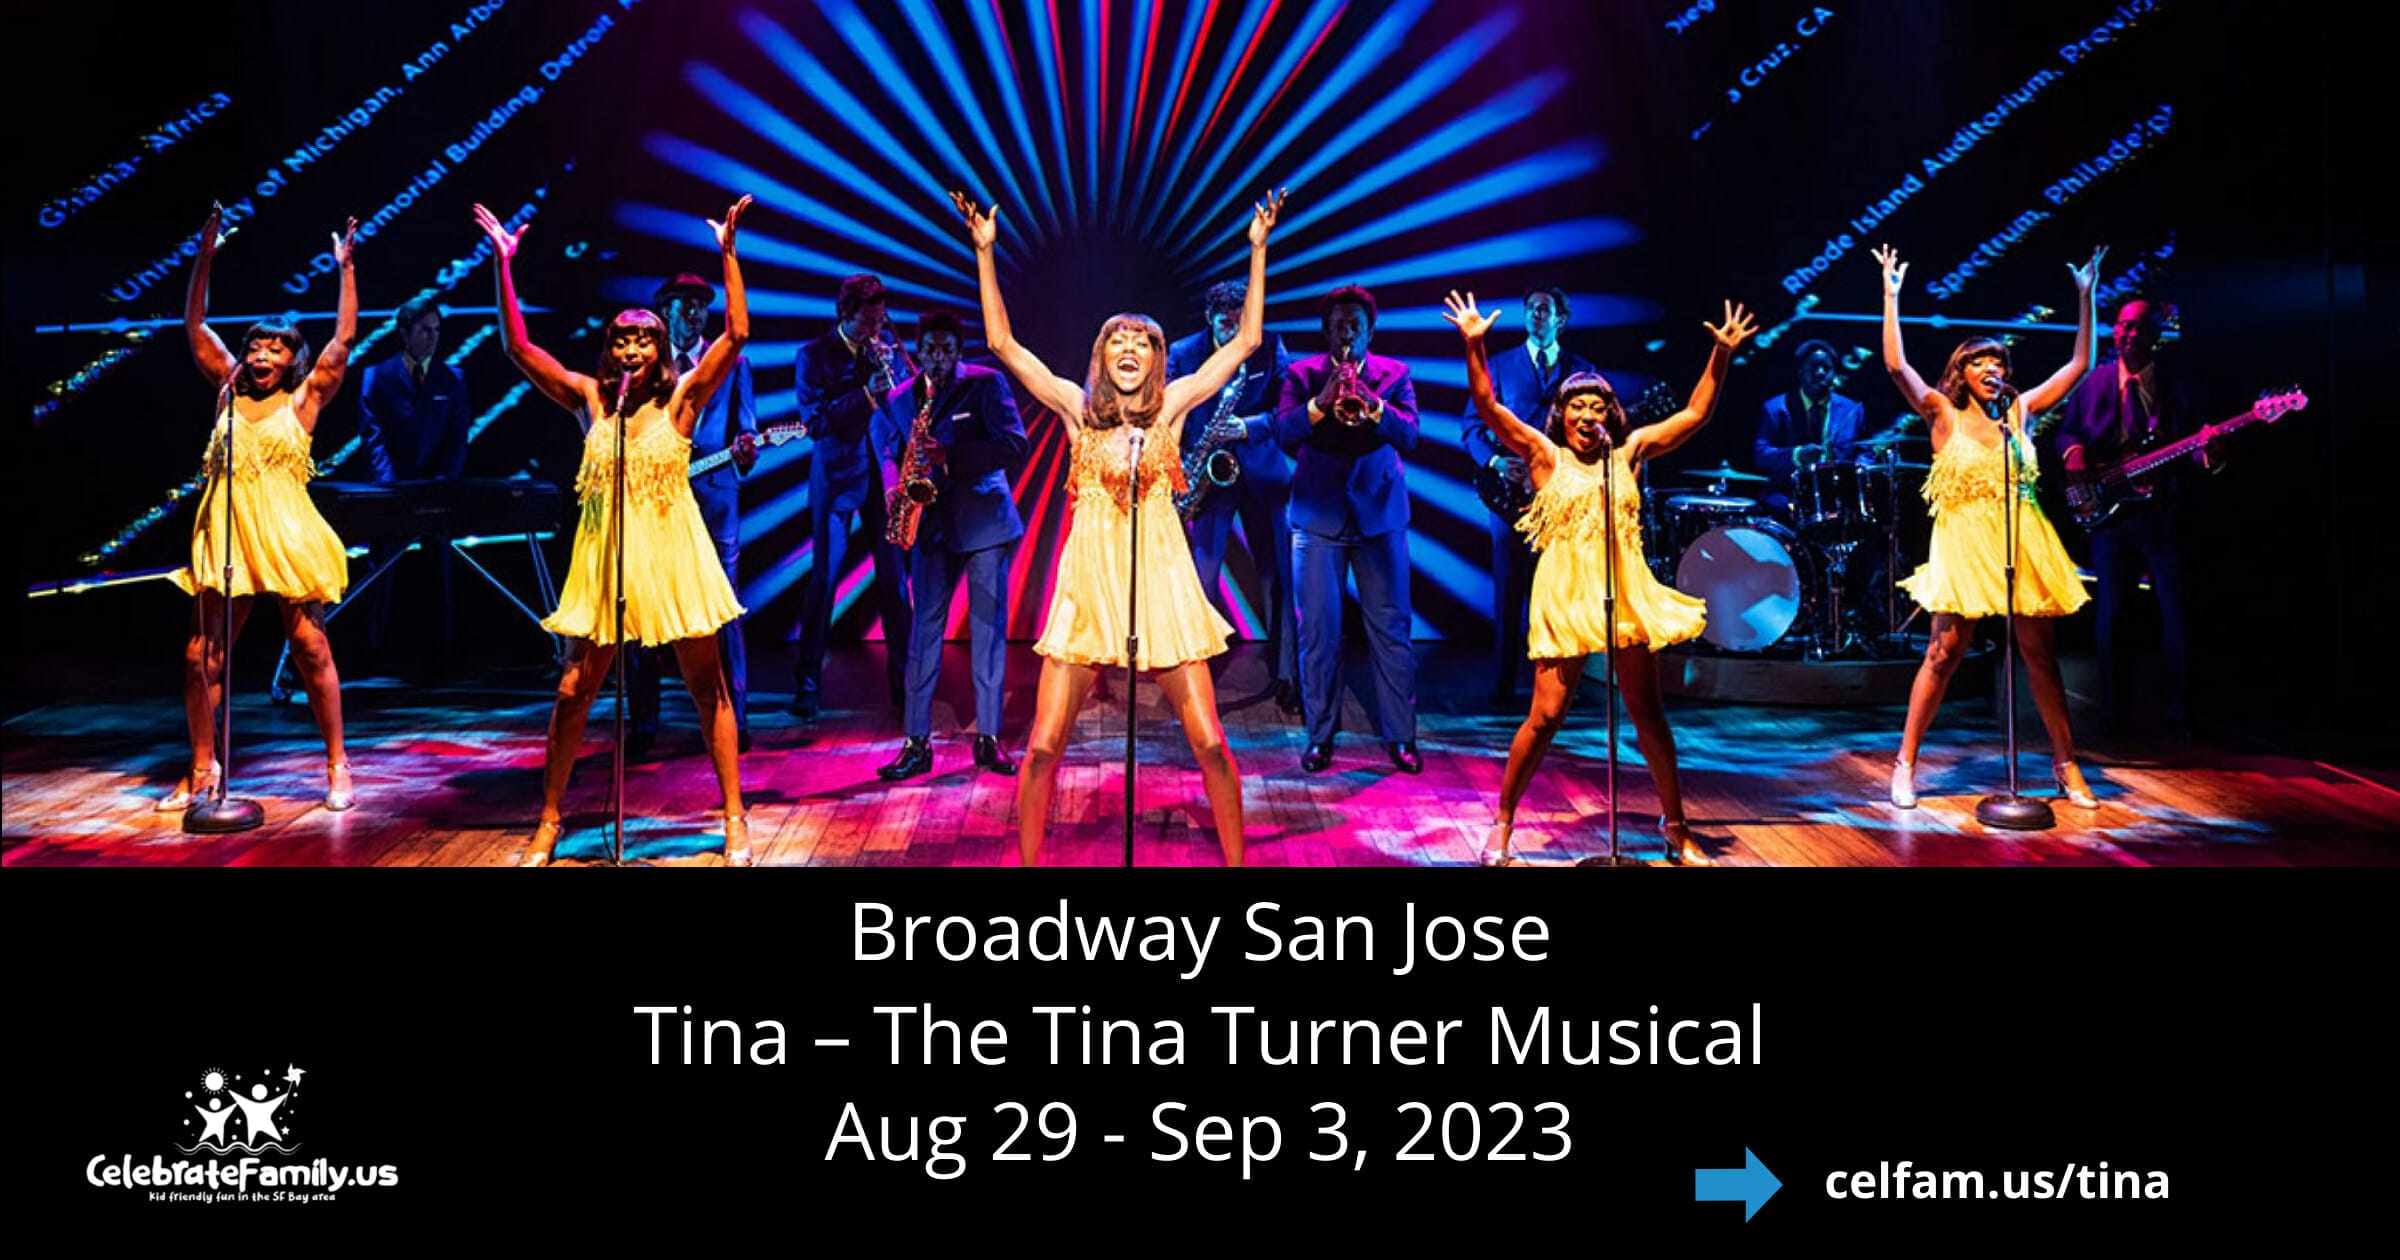 Tina – The Tina Turner Musical. San Jose Center for performing Arts. Aug 29 - Sep 3, 2023